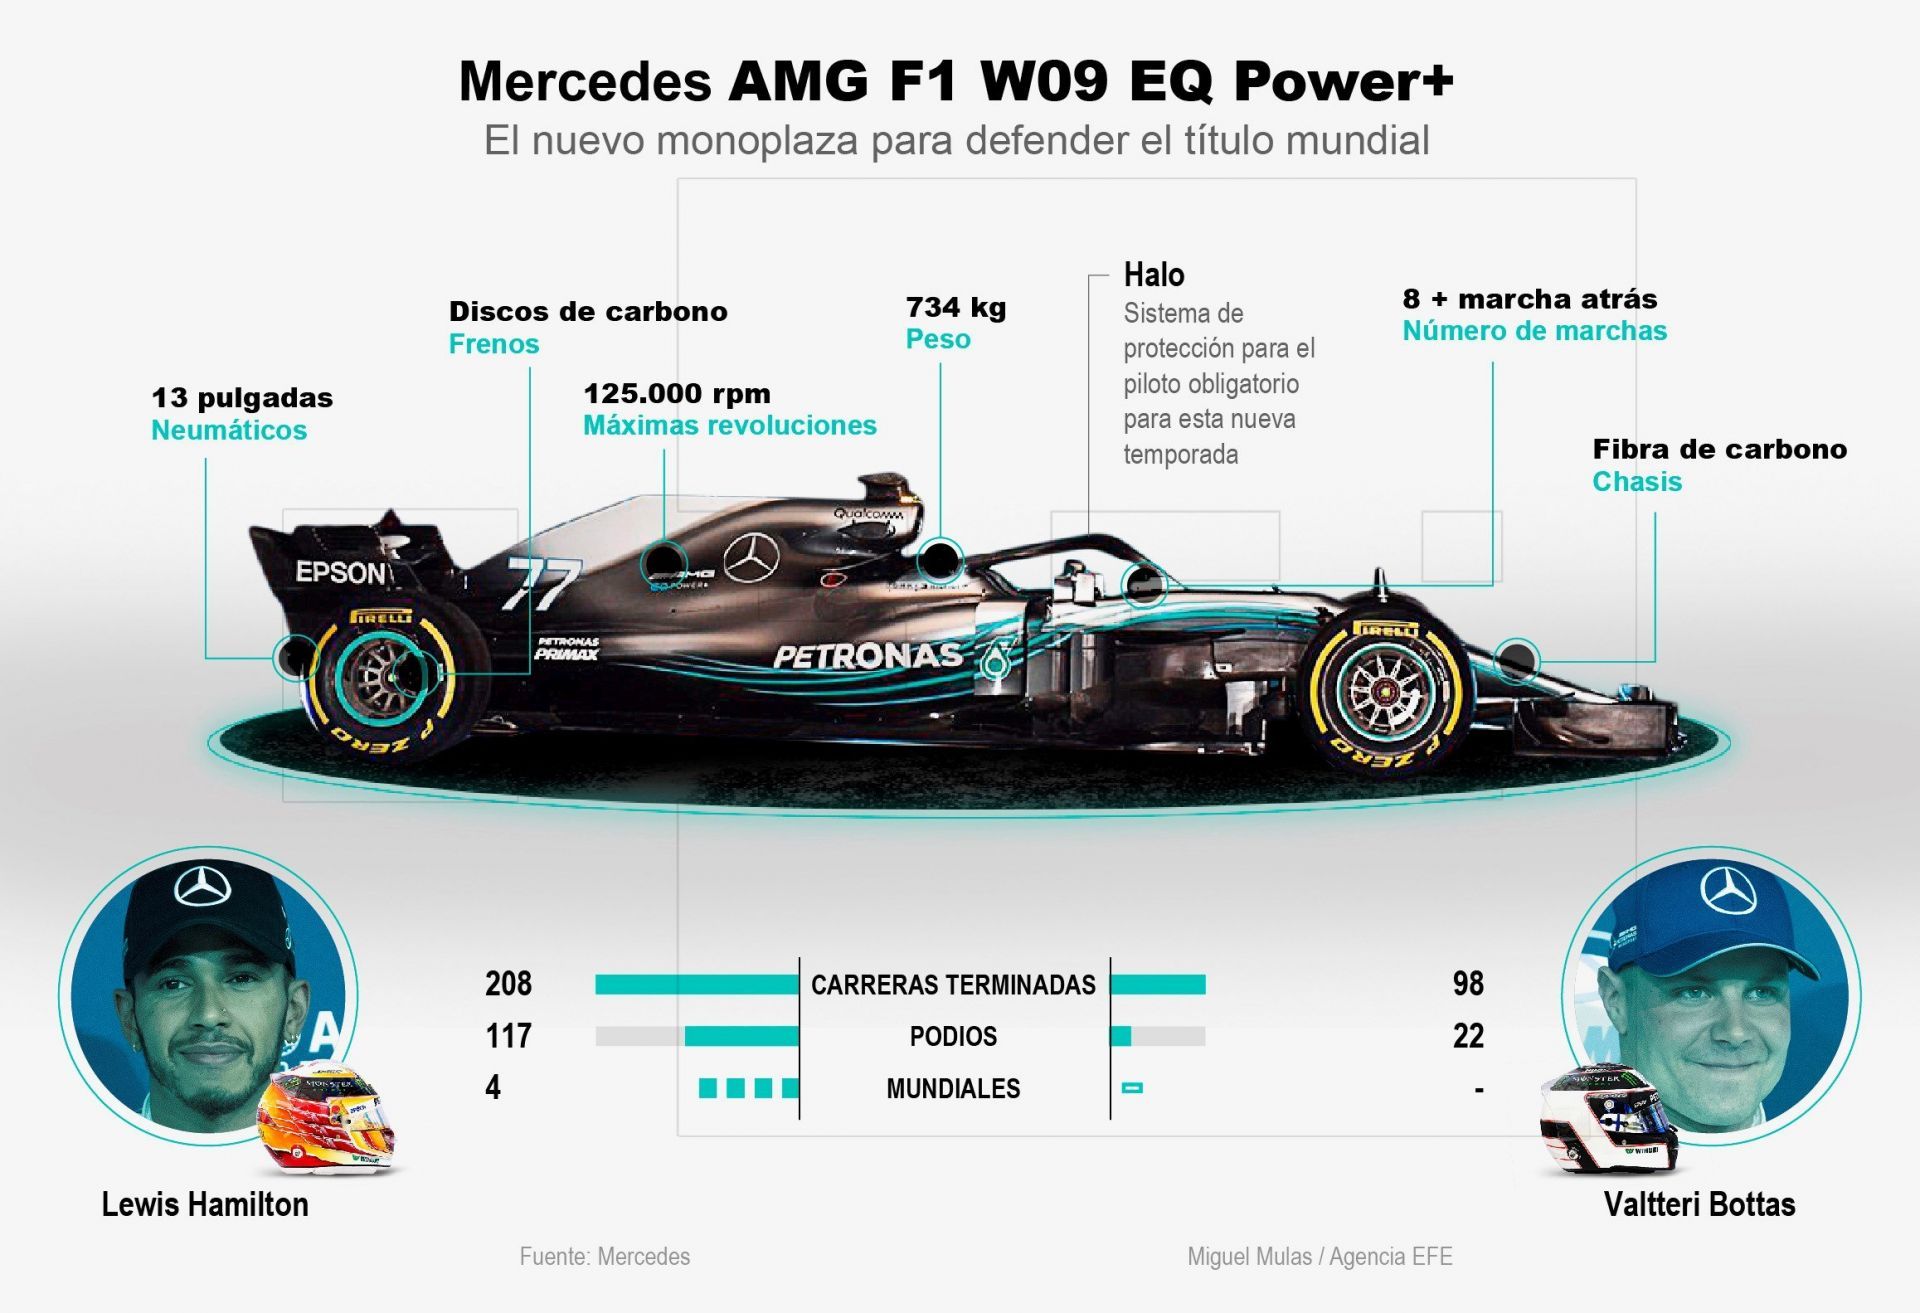 Mercedes AMG F1 W09 EQ POWER+